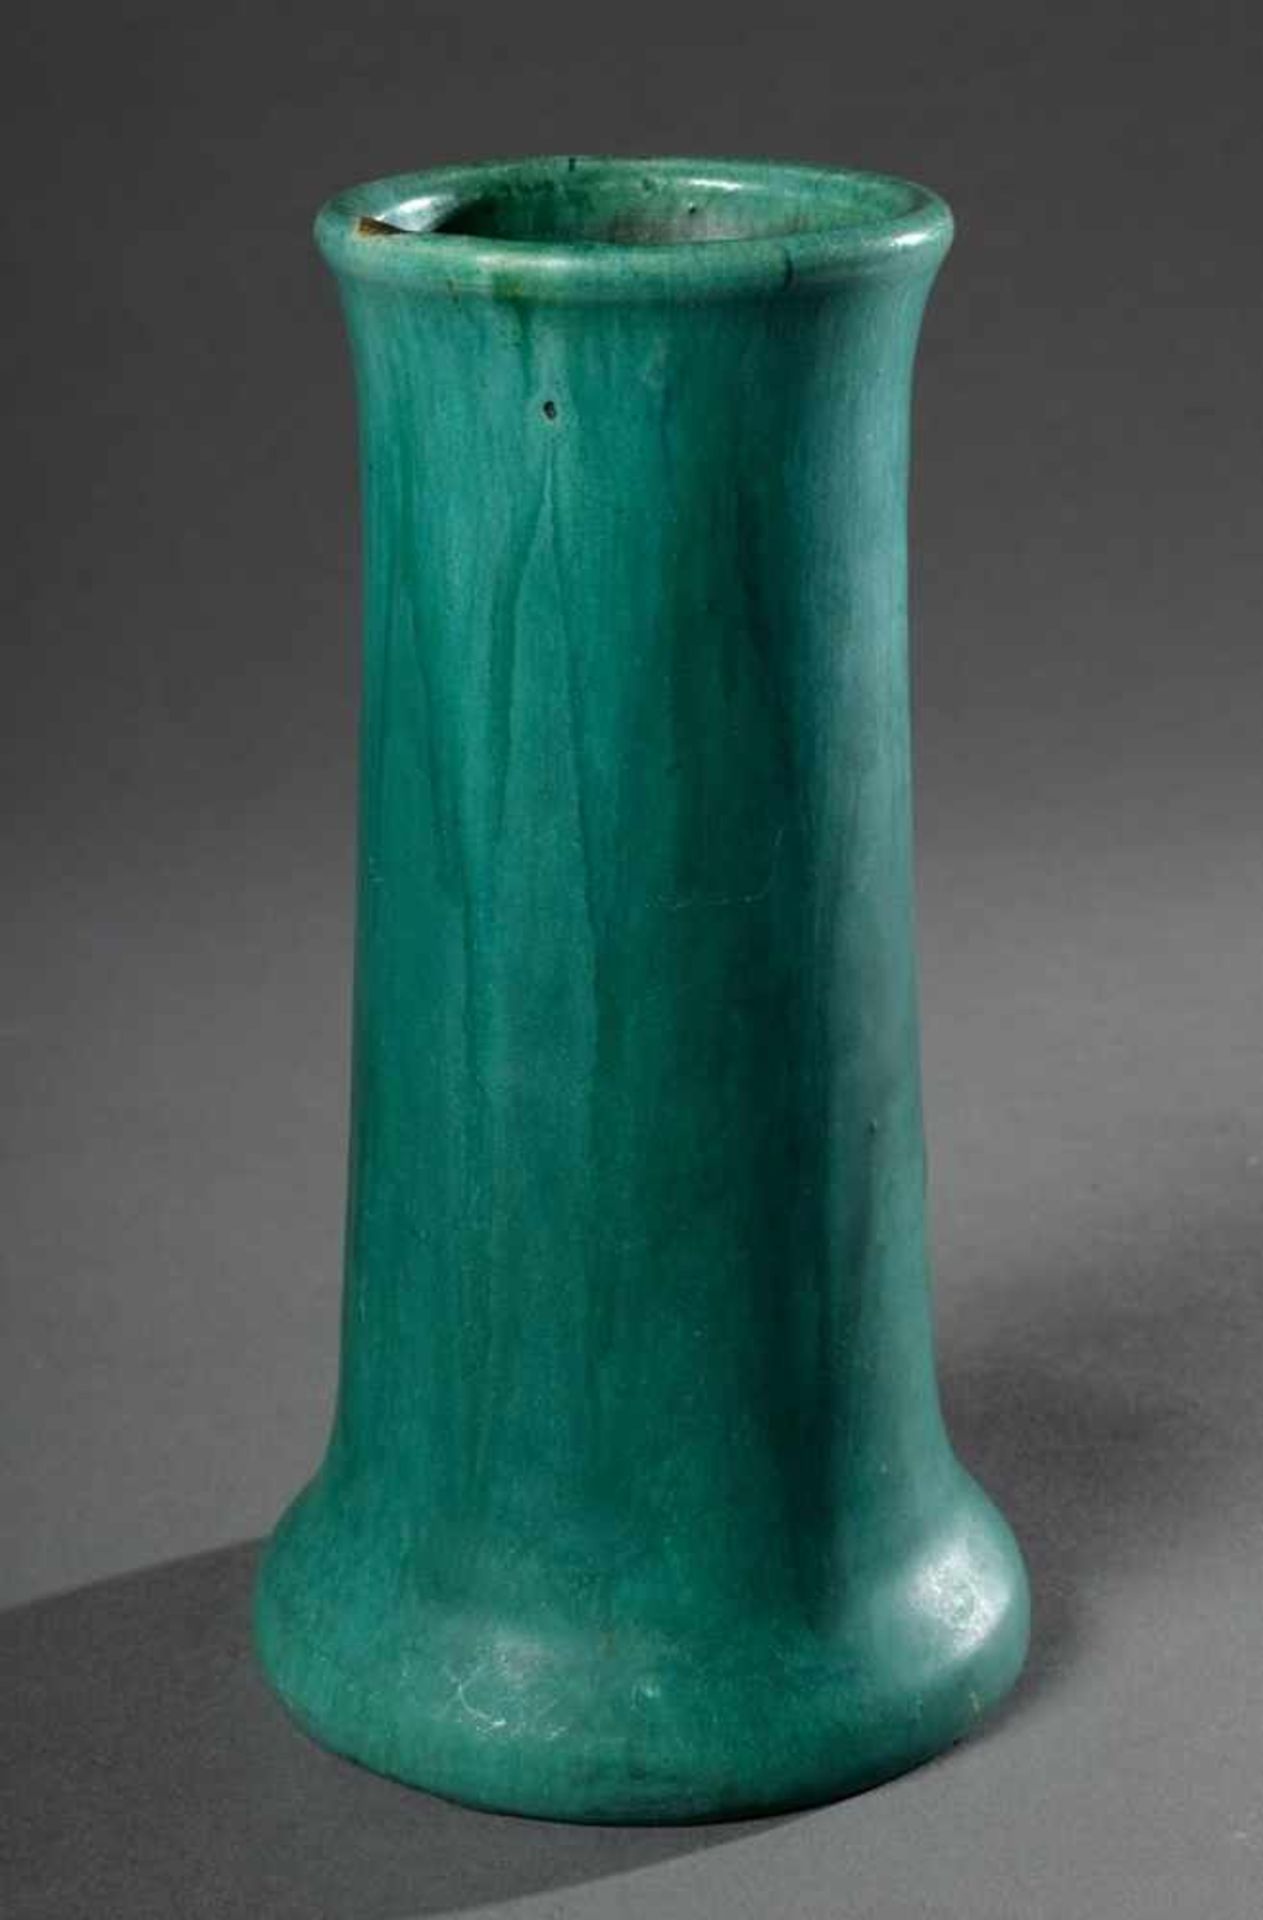 Grüne stangenförmige Vase, Mutz Wwe/Altona, Modellnr. 1337, 1913-1929, H. 19cmGreen vase, Mutz Wwe/ - Image 2 of 4